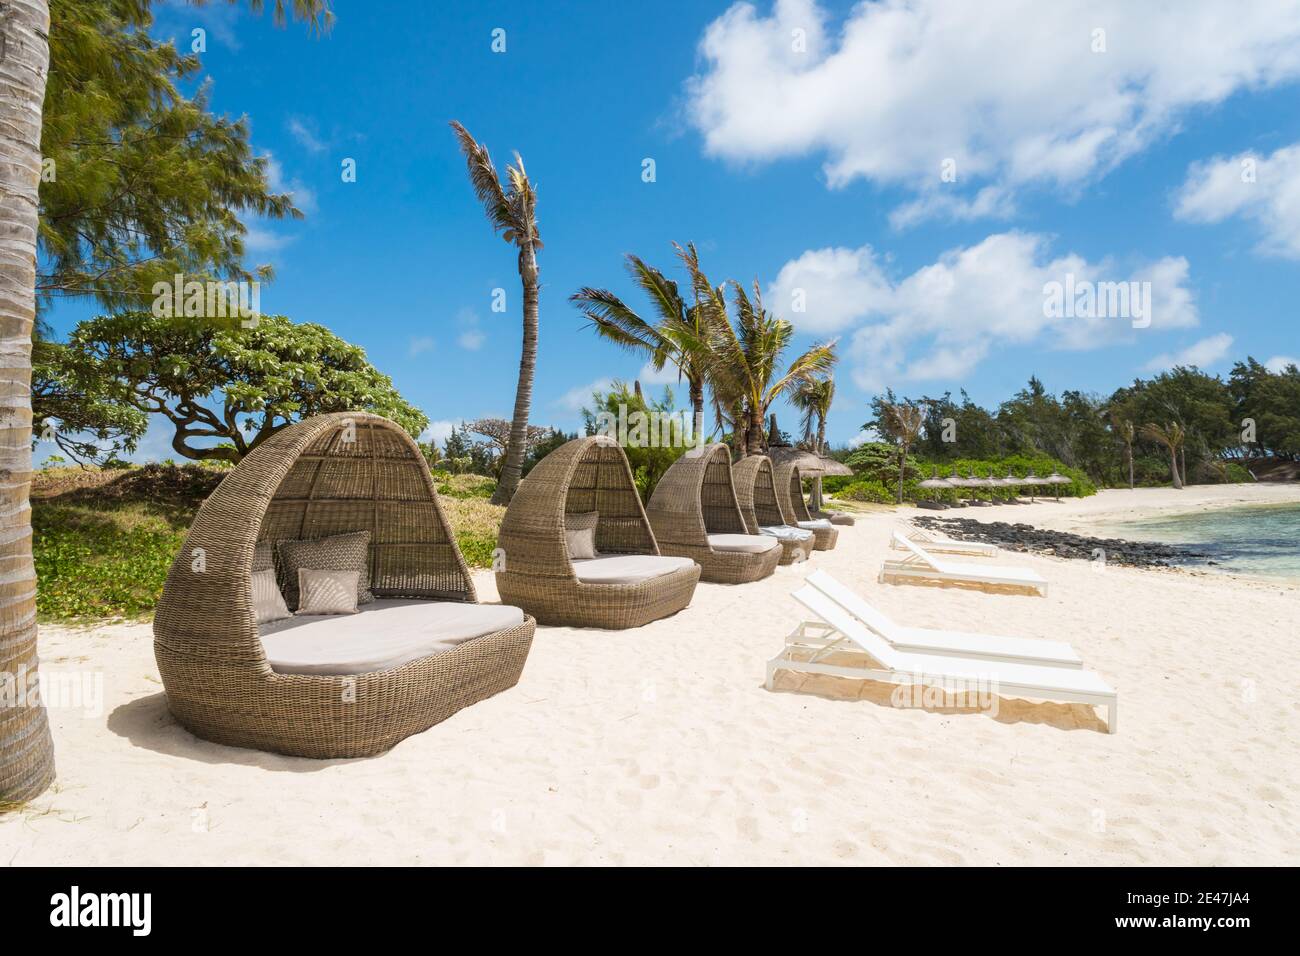 Tumbonas, vainas, sillas, hechas de caña tejida o material en una fila en una playa de arena blanca en la isla tropical de Mauricio sin gente Foto de stock